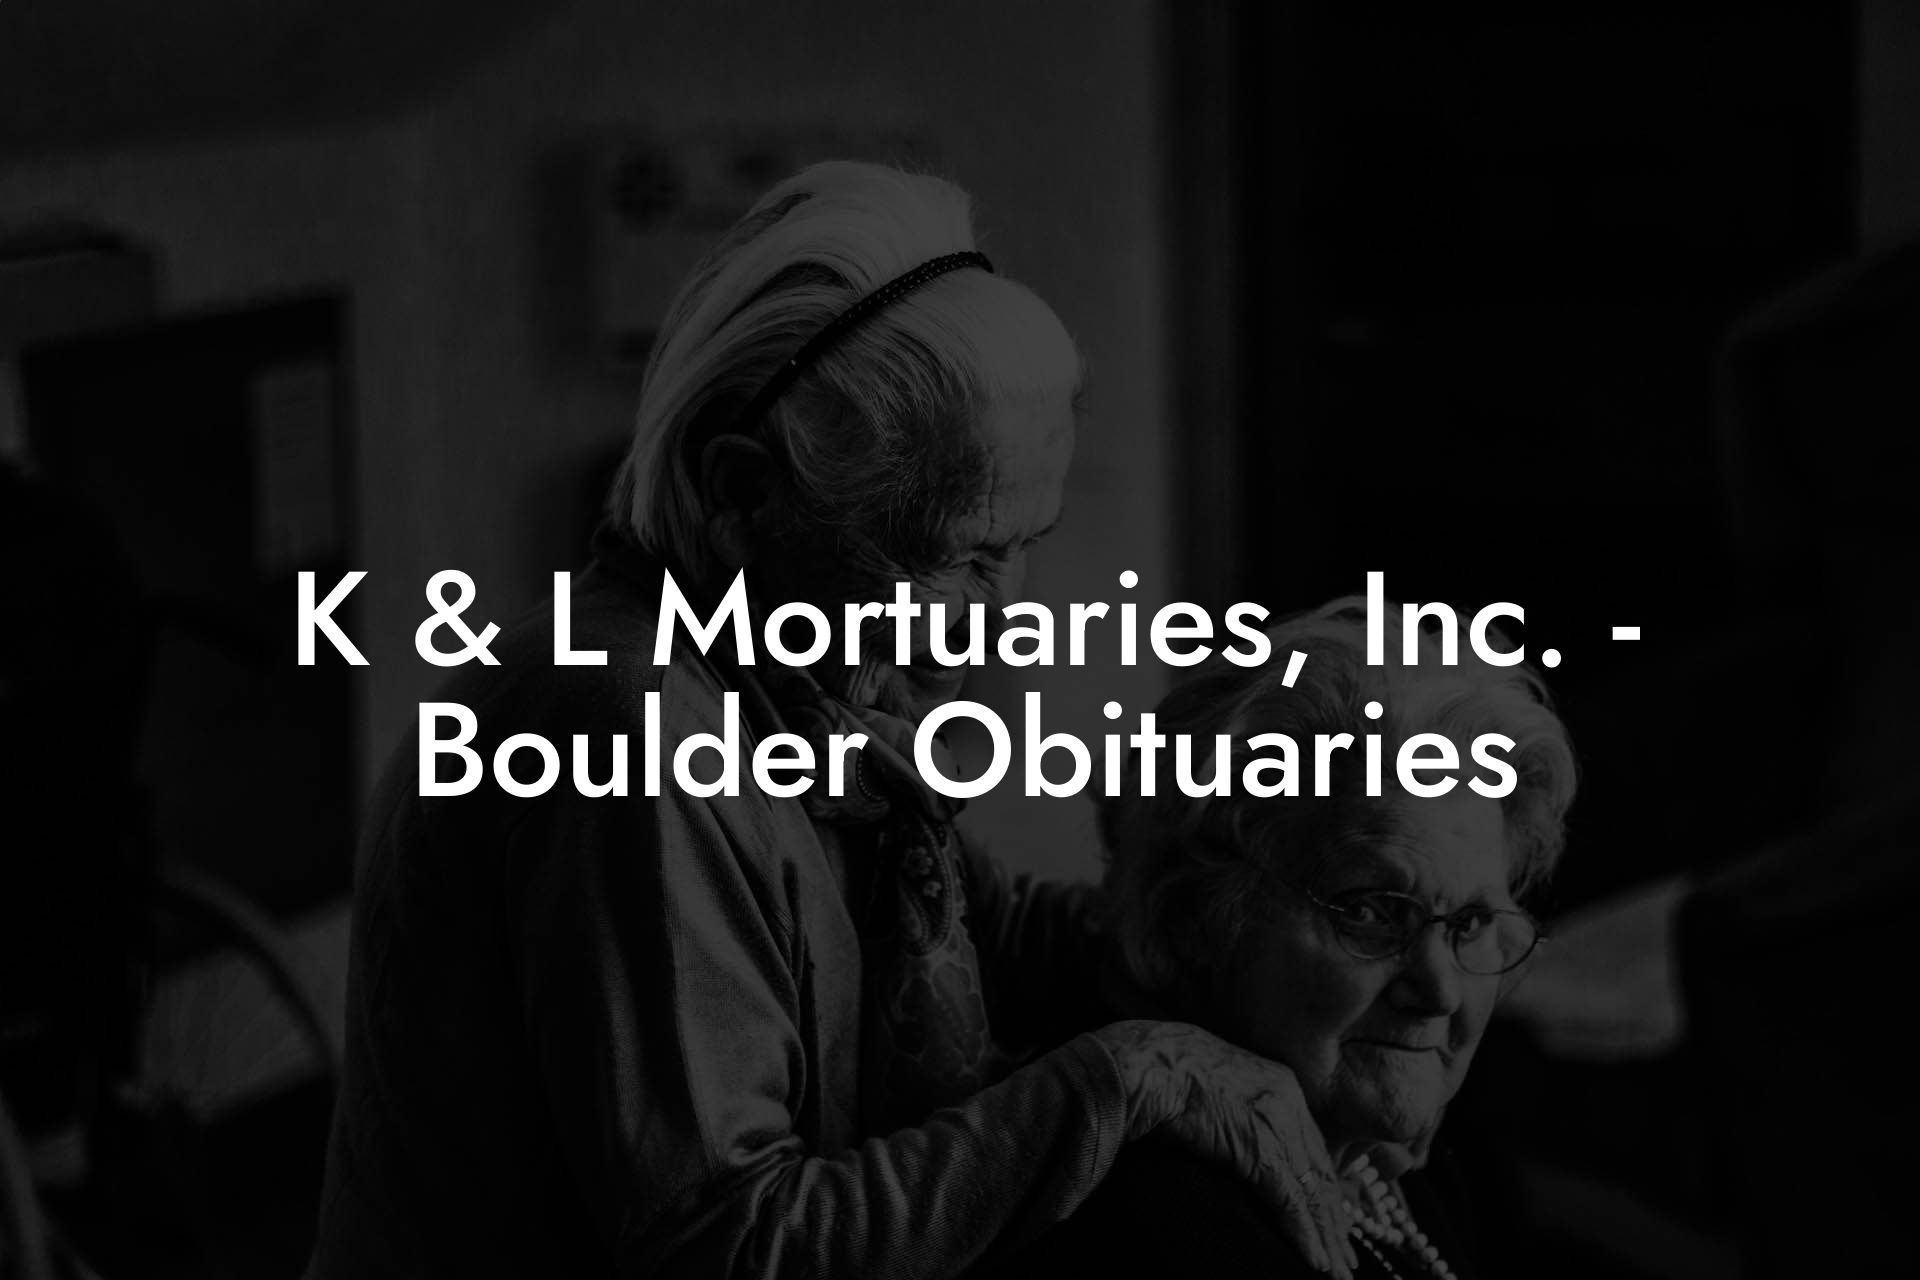 K & L Mortuaries, Inc. - Boulder Obituaries